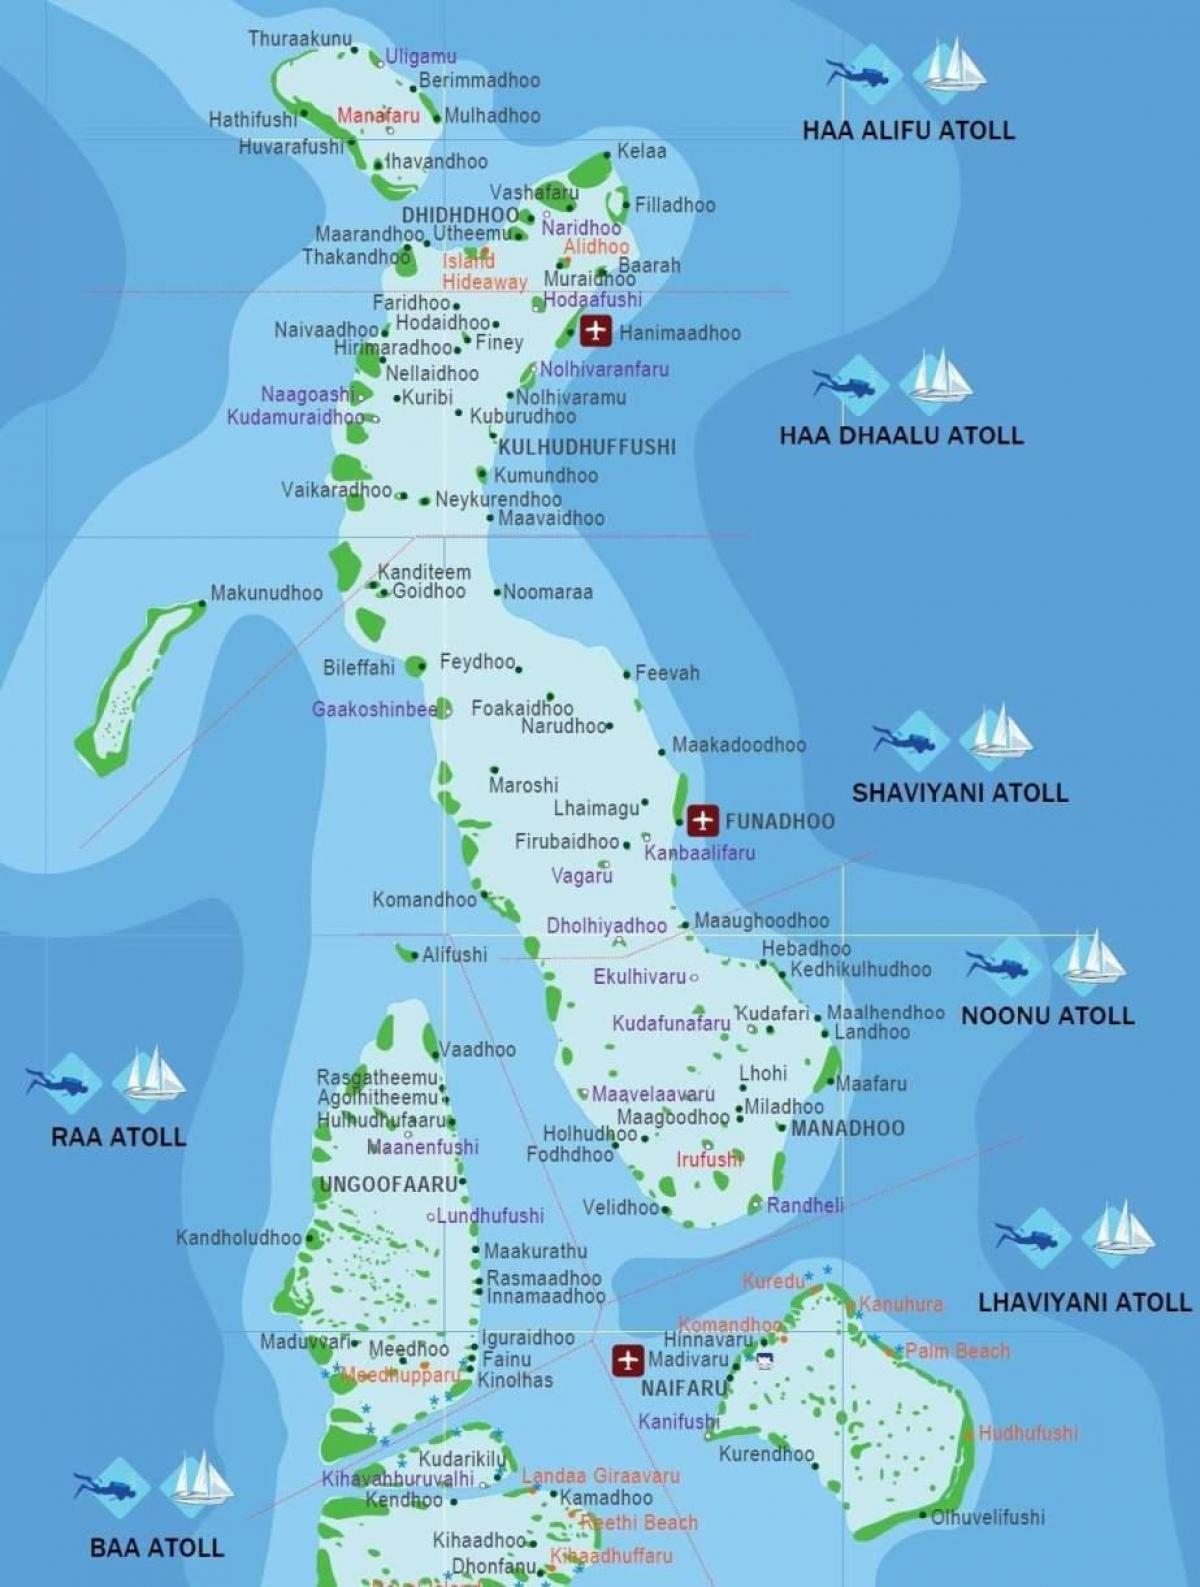 مکمل نقشہ مالدیپ کے